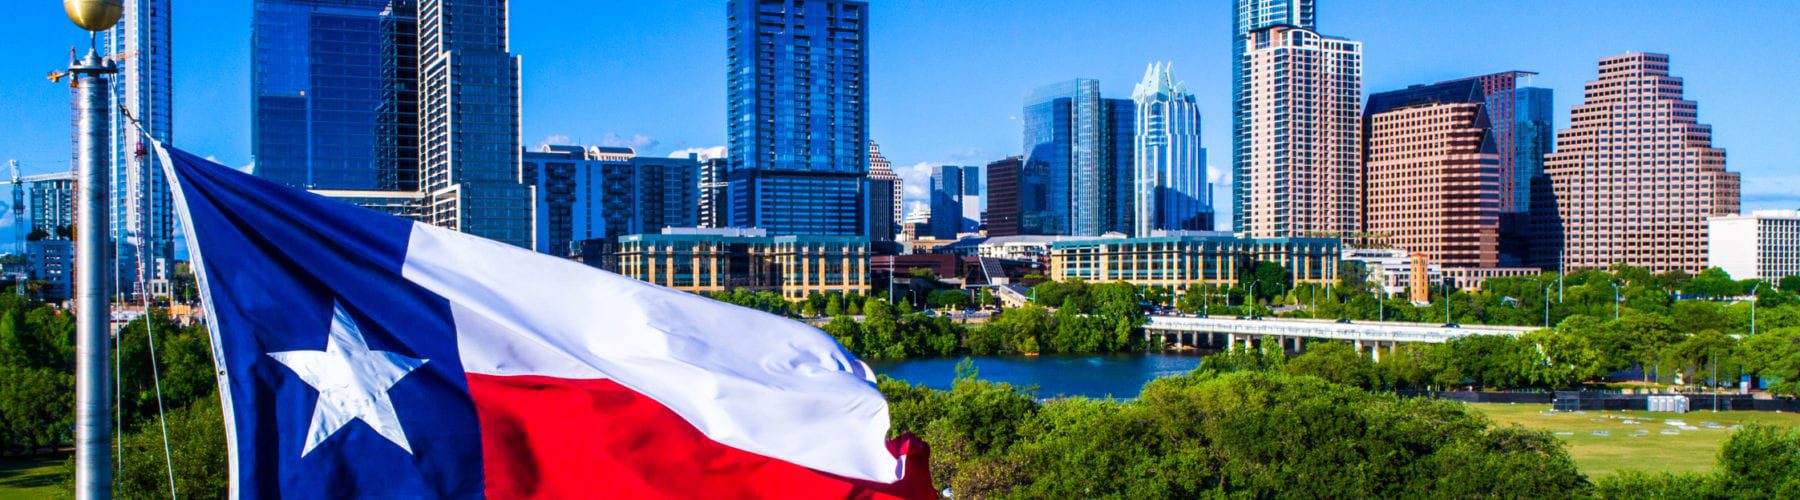 Texas Flag waving above Austin Skyline